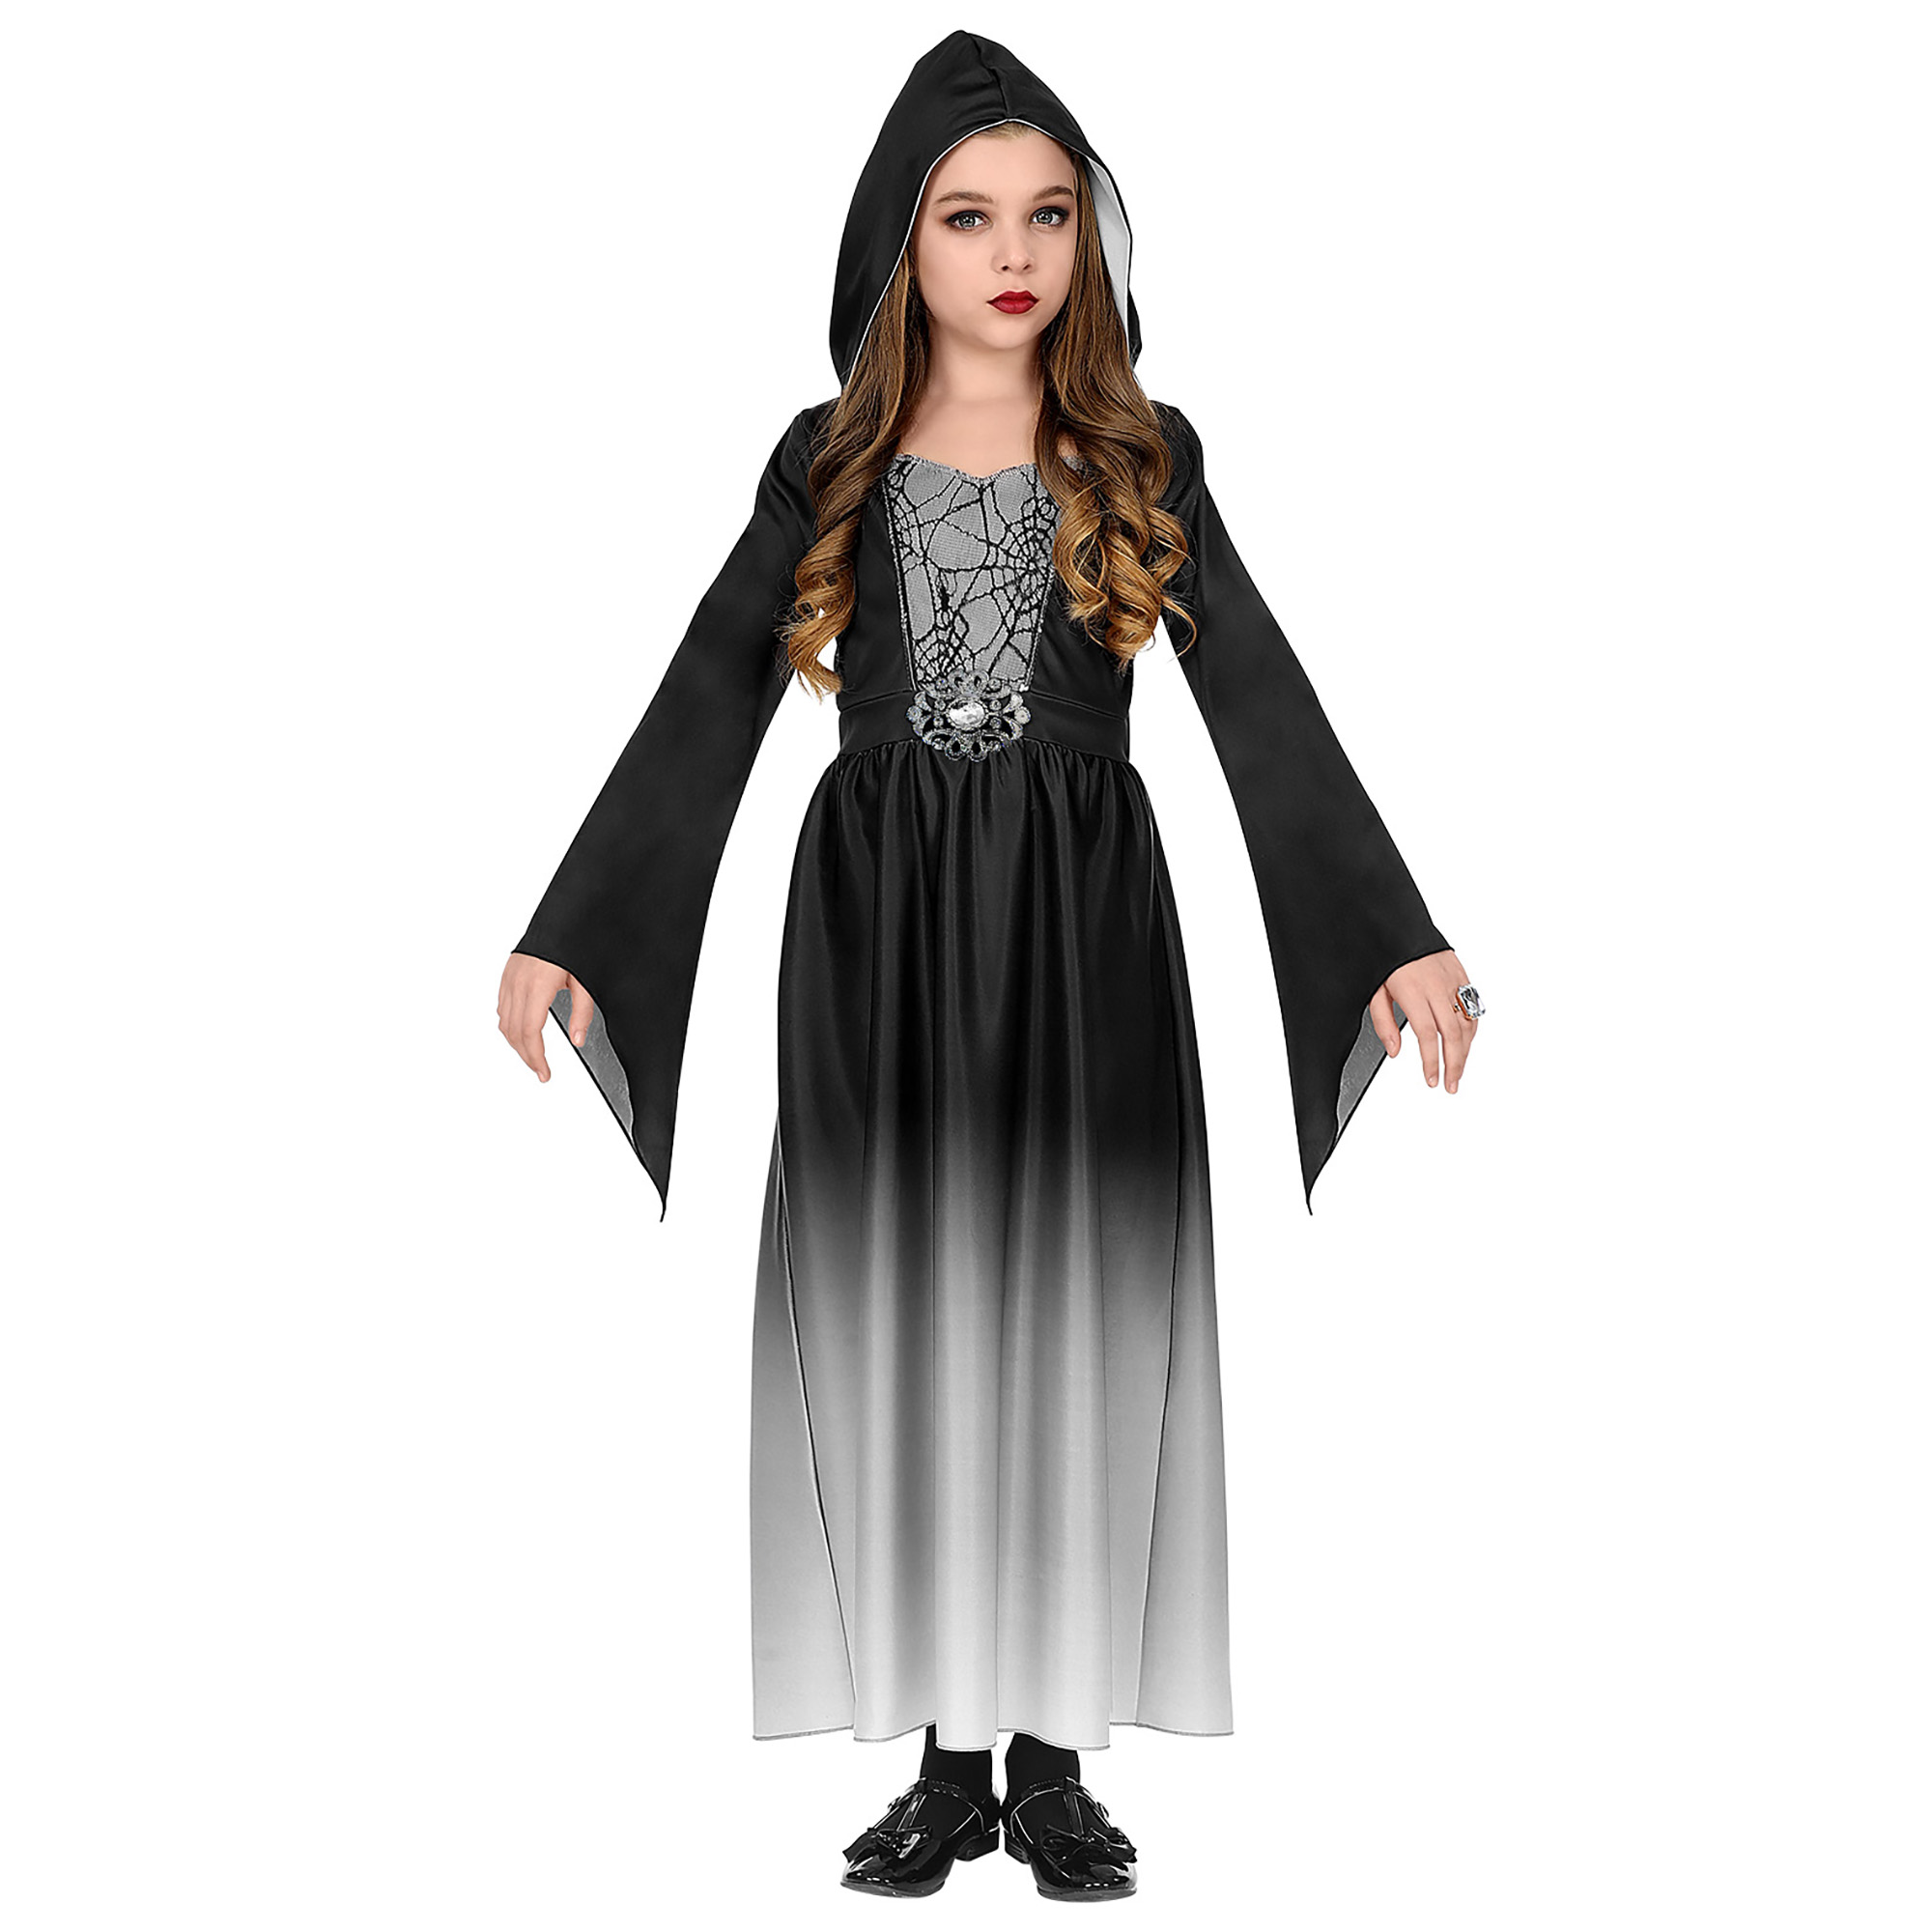 Kinderkostüm Gothic Mädchen Gothic Girl Kleid mit Kapuze 